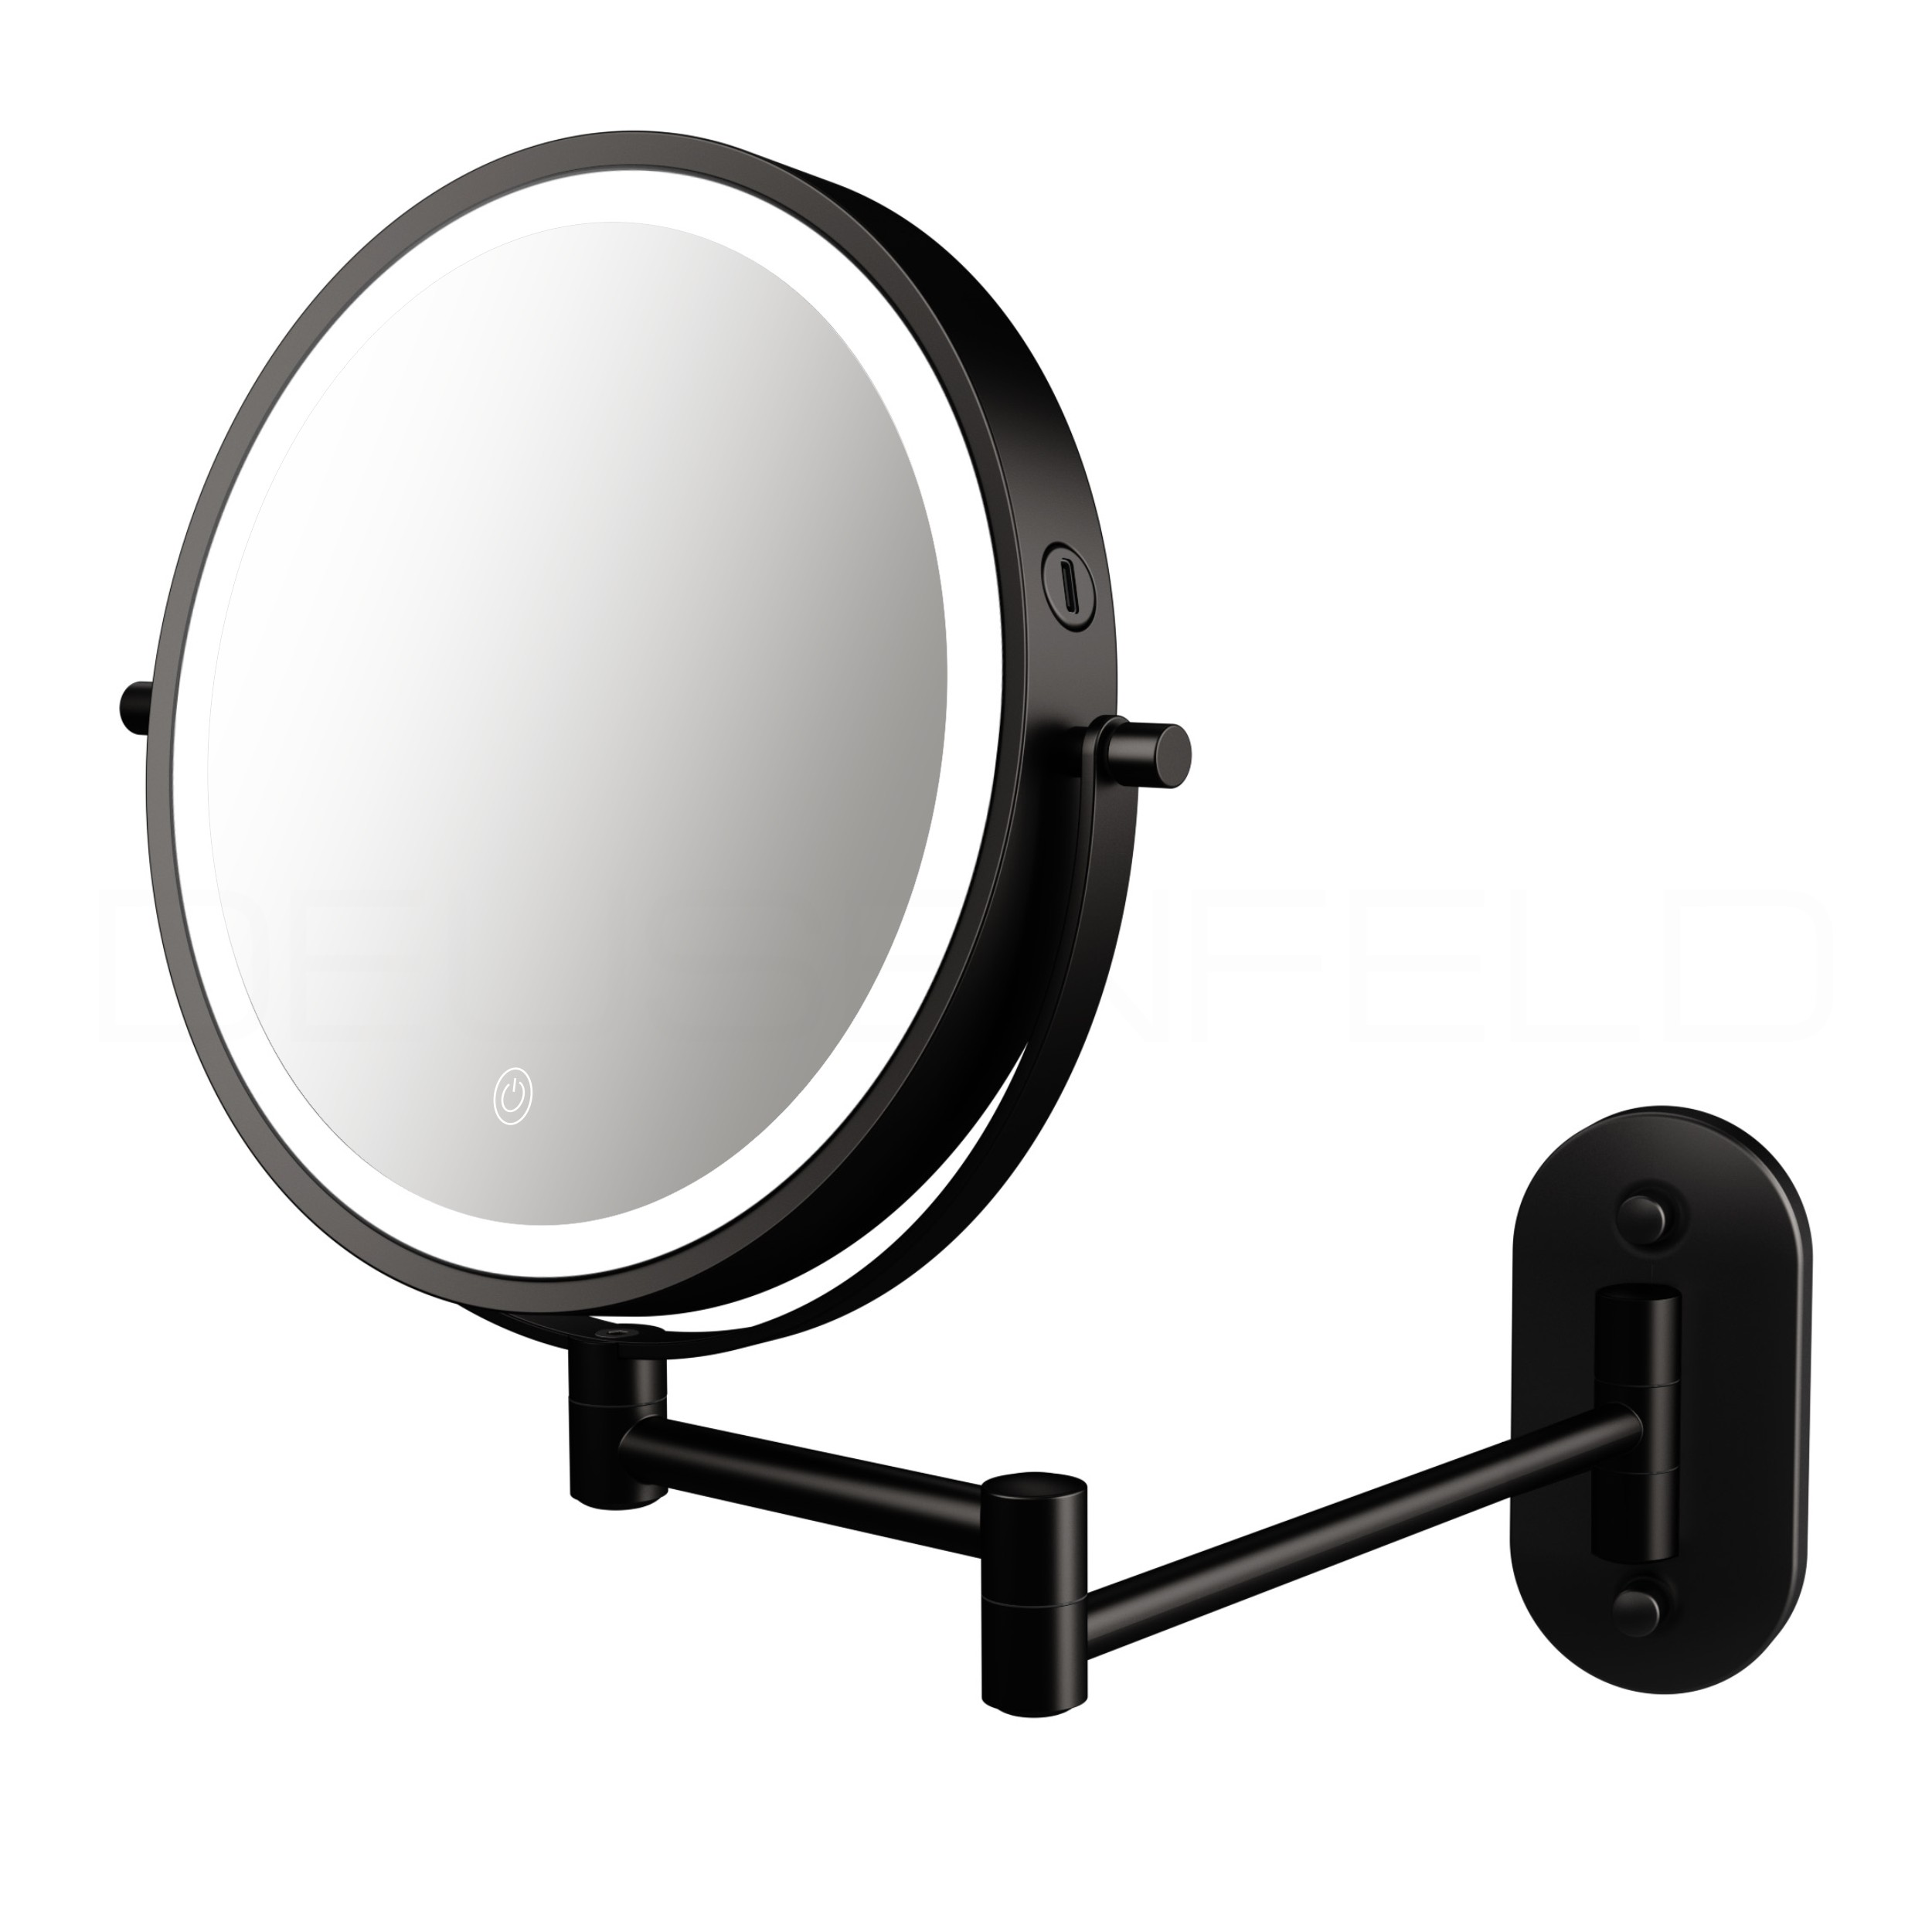 Kosmetikspiegel online kaufen  MAEDJE KG - DEUSENFELD KM10C - Magnet  Kosmetikspiegel mit 2 selbstklebenden Wandplatten, Klebespiegel, magnetisch  abnehmbar, Ø15cm, 10x Vergrößerung, hochglanz verchromt